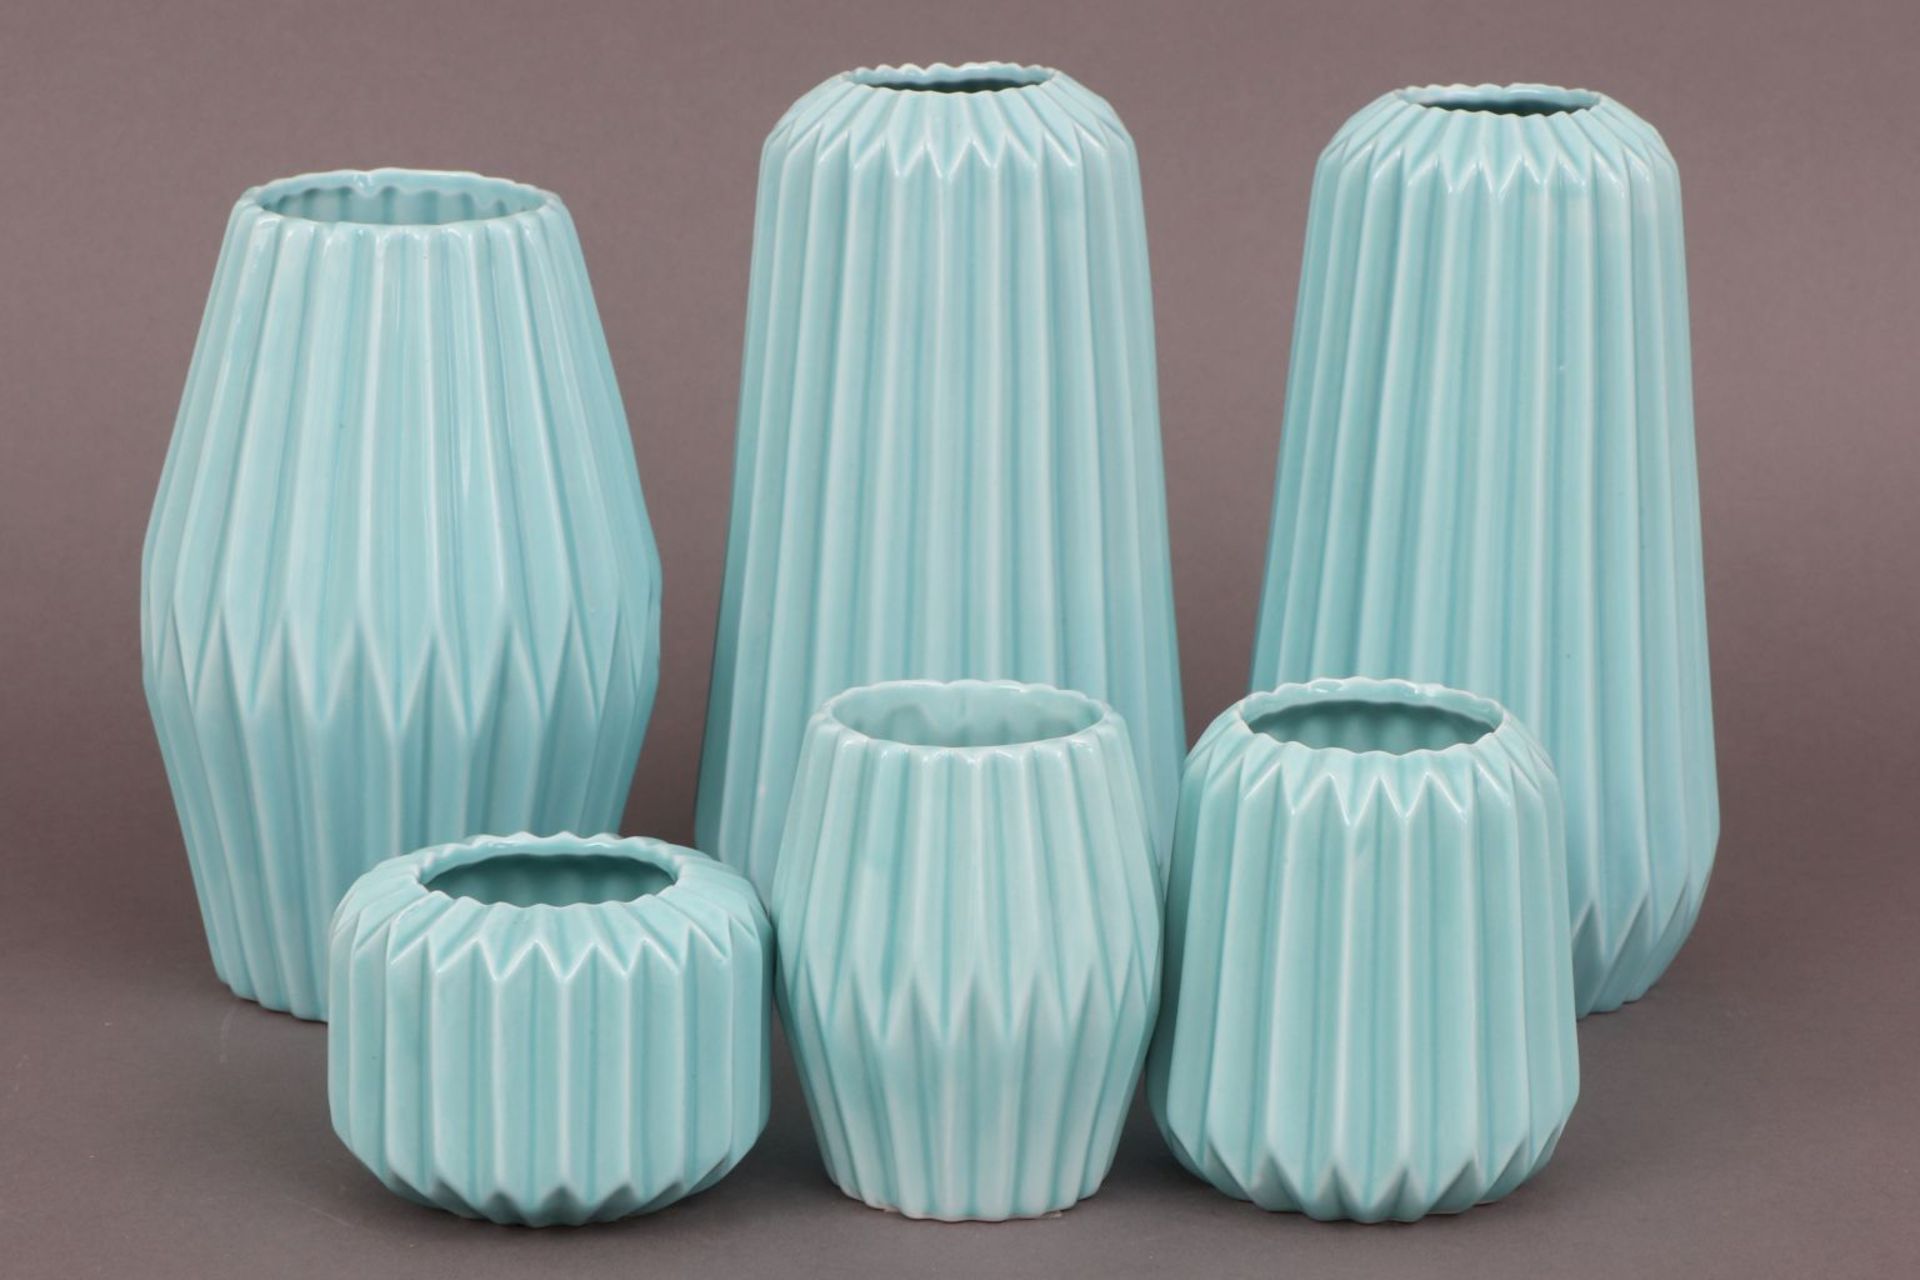 6 BLOOMINGVILLE Vasen im skandinavischen Mid-century StilPorzellan, mintgrün glasiert, diverse - Bild 2 aus 4